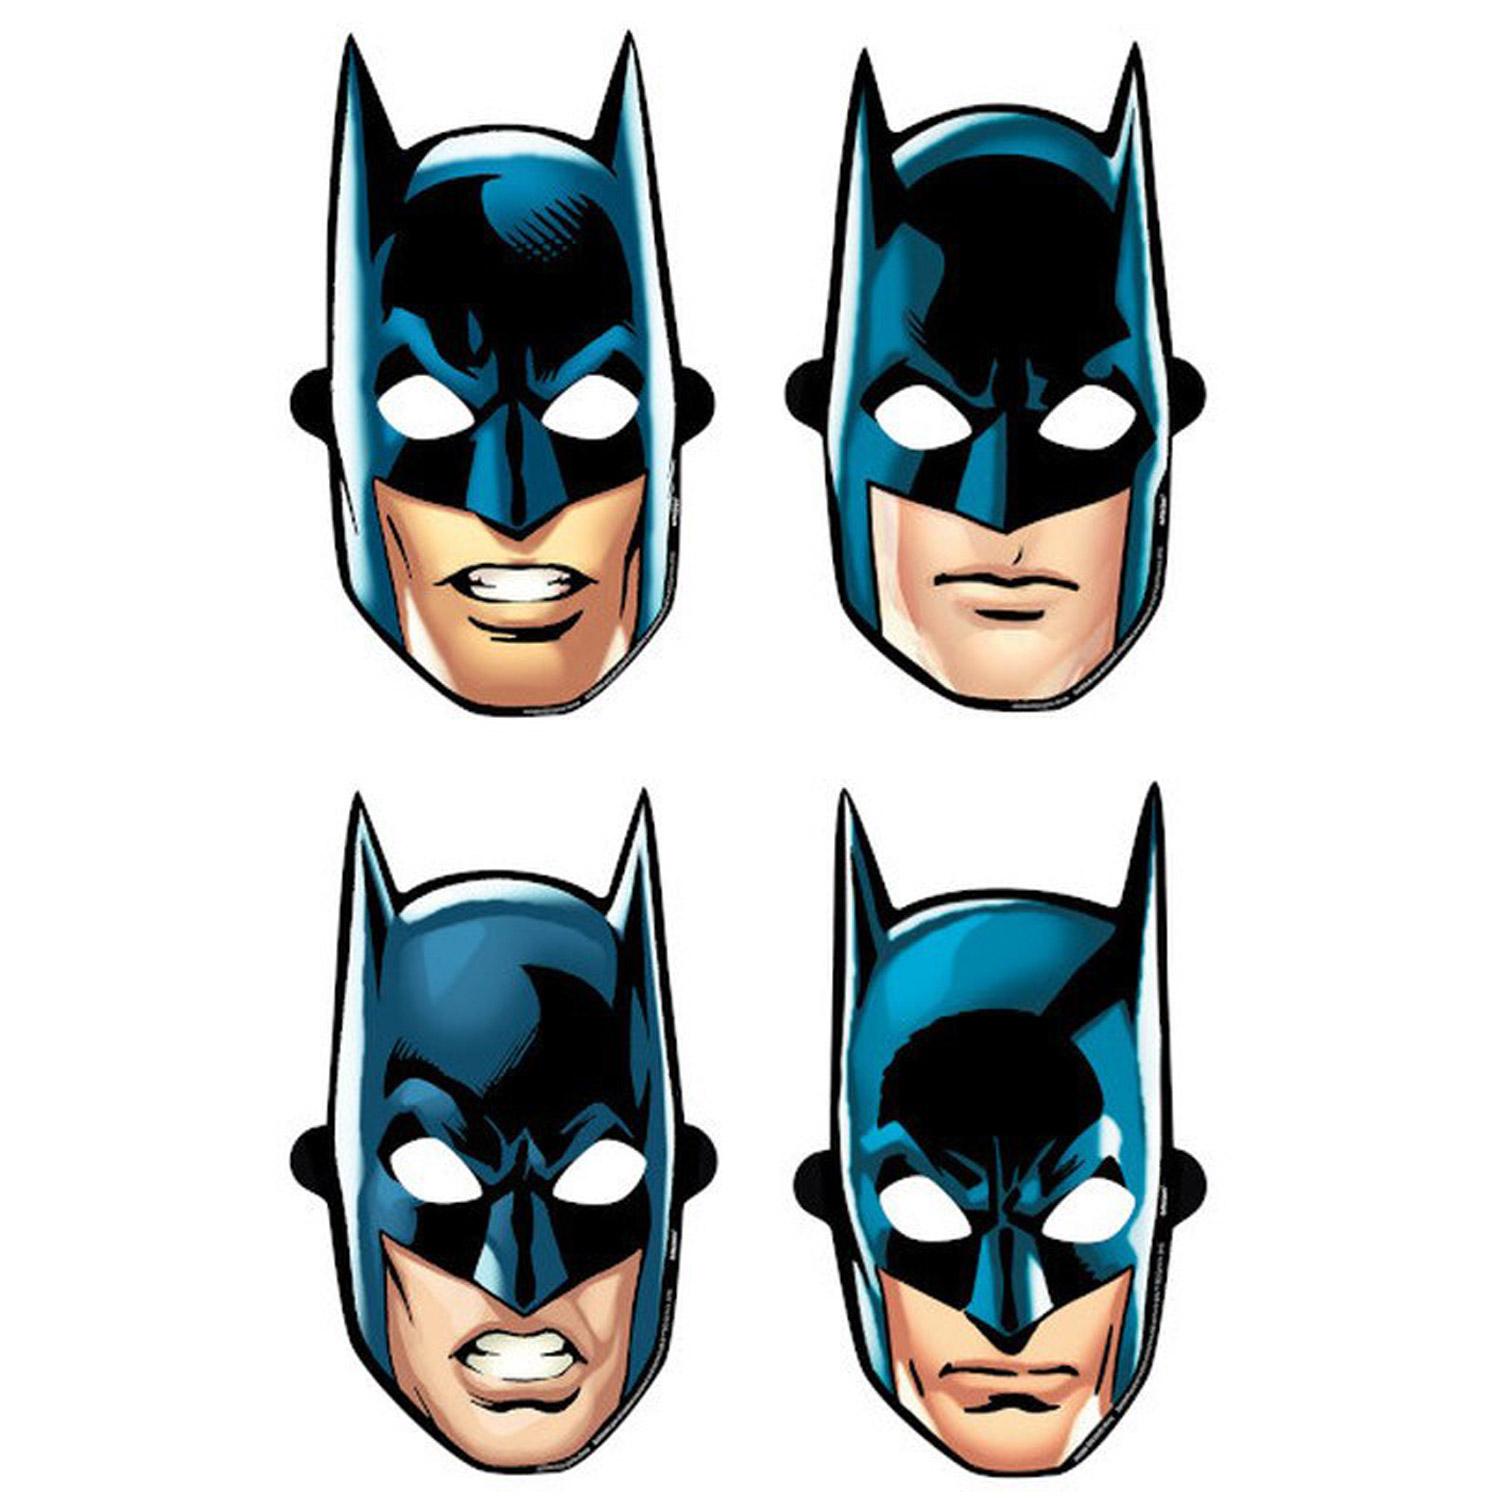 Batman Heroes Unite Paper Mask 8pcs Costumes & Apparel - Party Centre - Party Centre